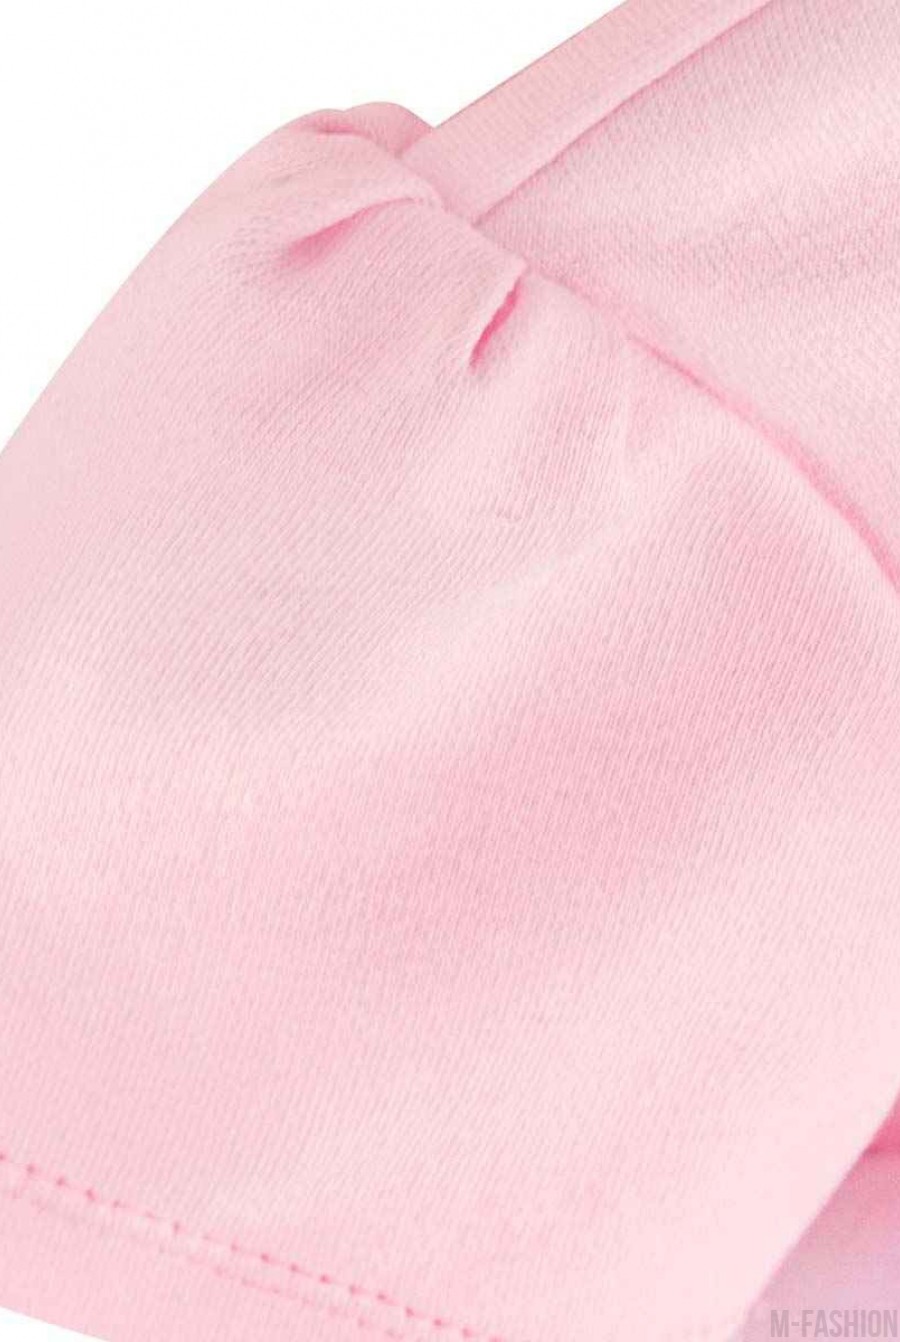 Розовое хлопковое боди с длинной фатиновой юбкой и с возможностью индивидуальной печати имени (латиница) на принте- Фото 5